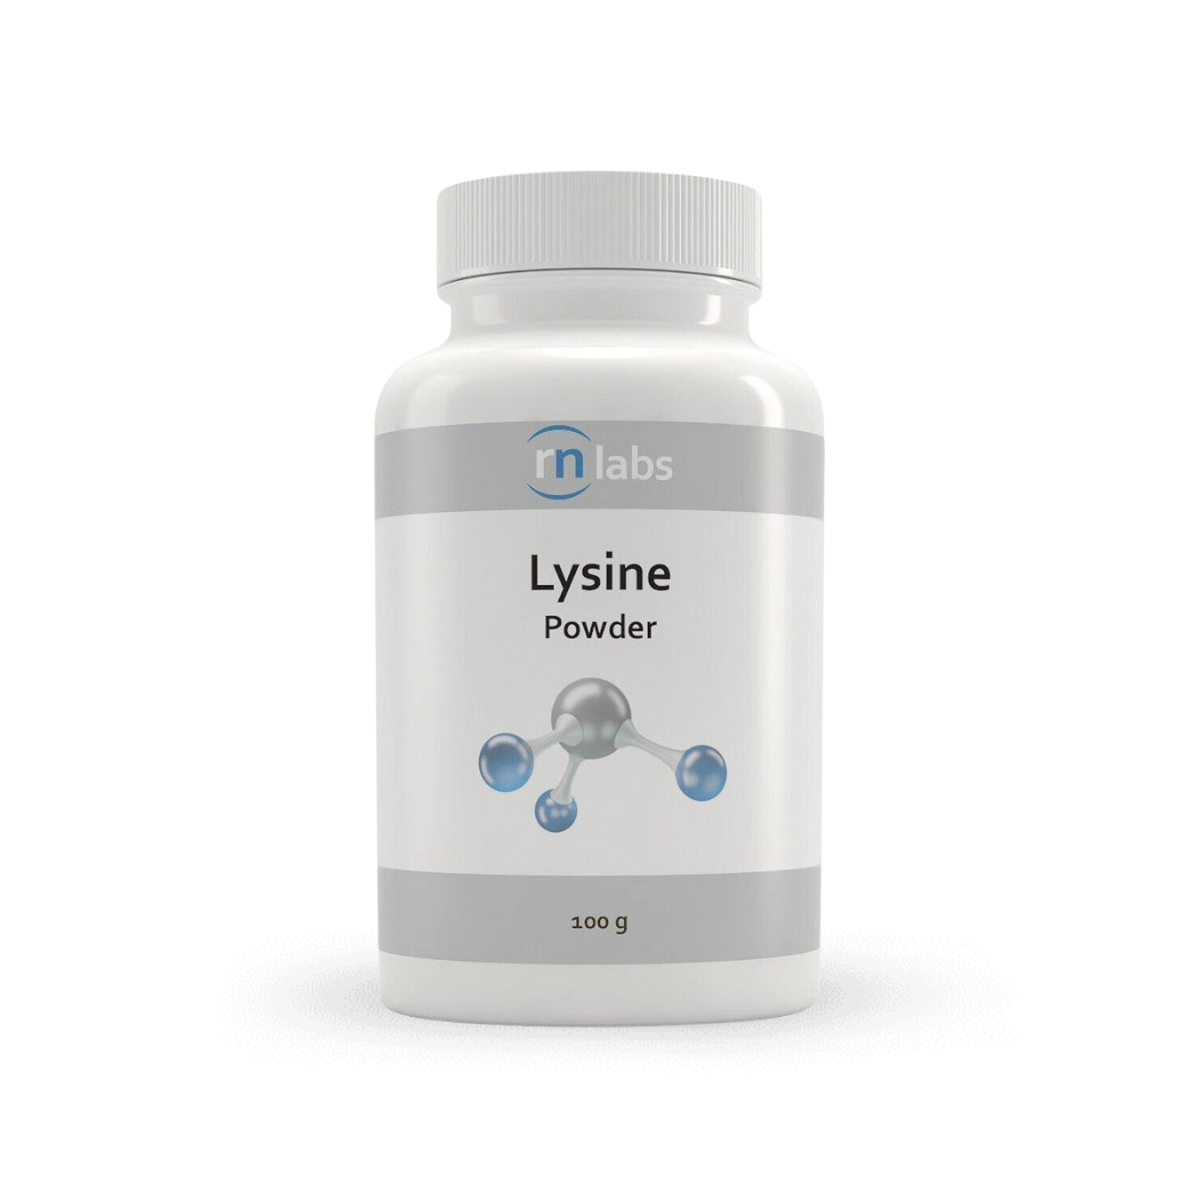 RN Labs Lysine Powder 100g